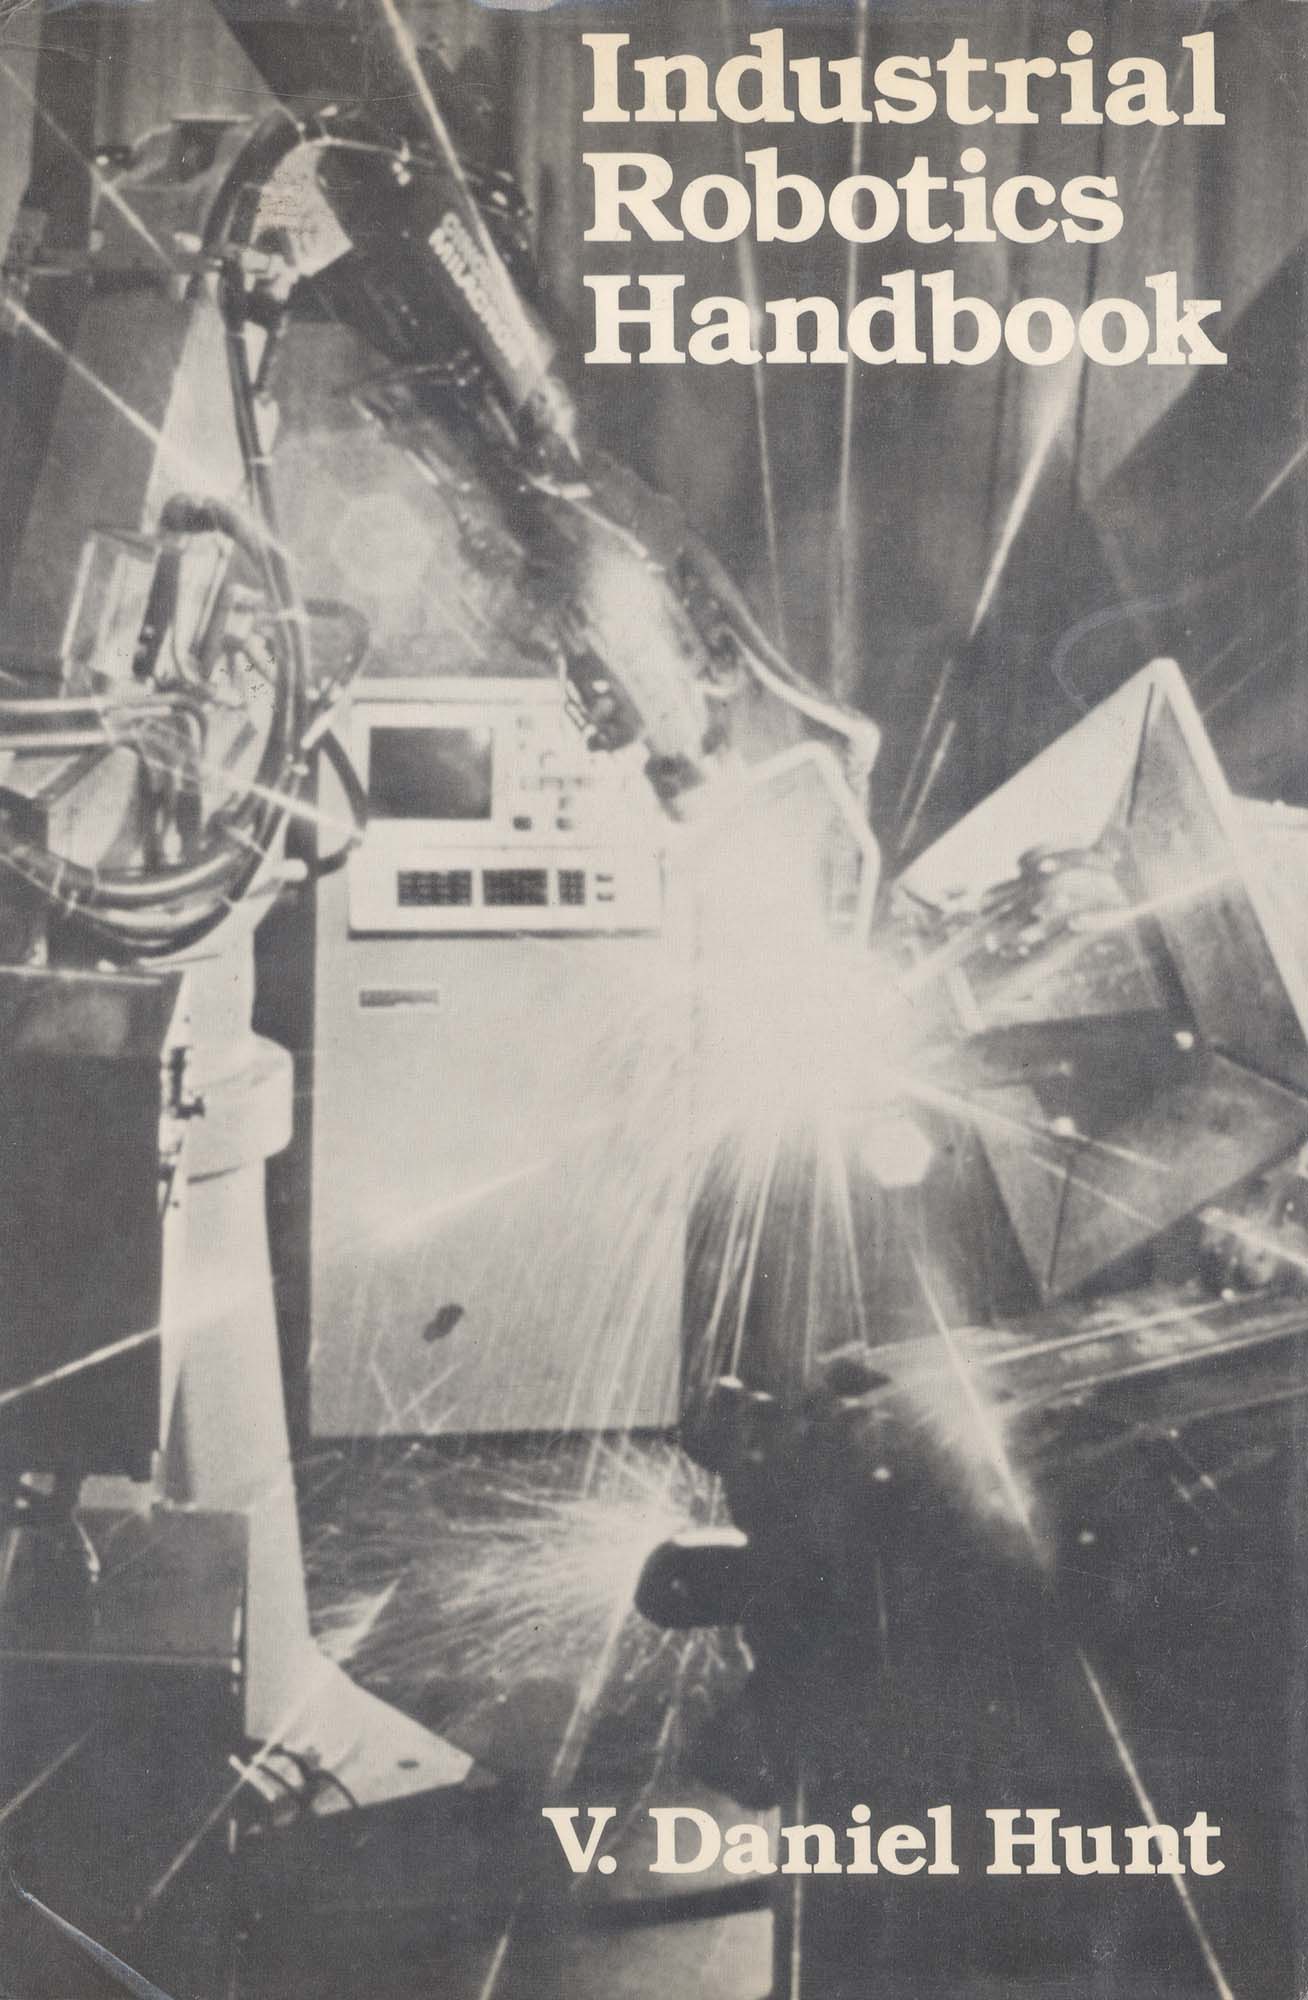 Book-Industrial Robotics Handbook (limited quantity)